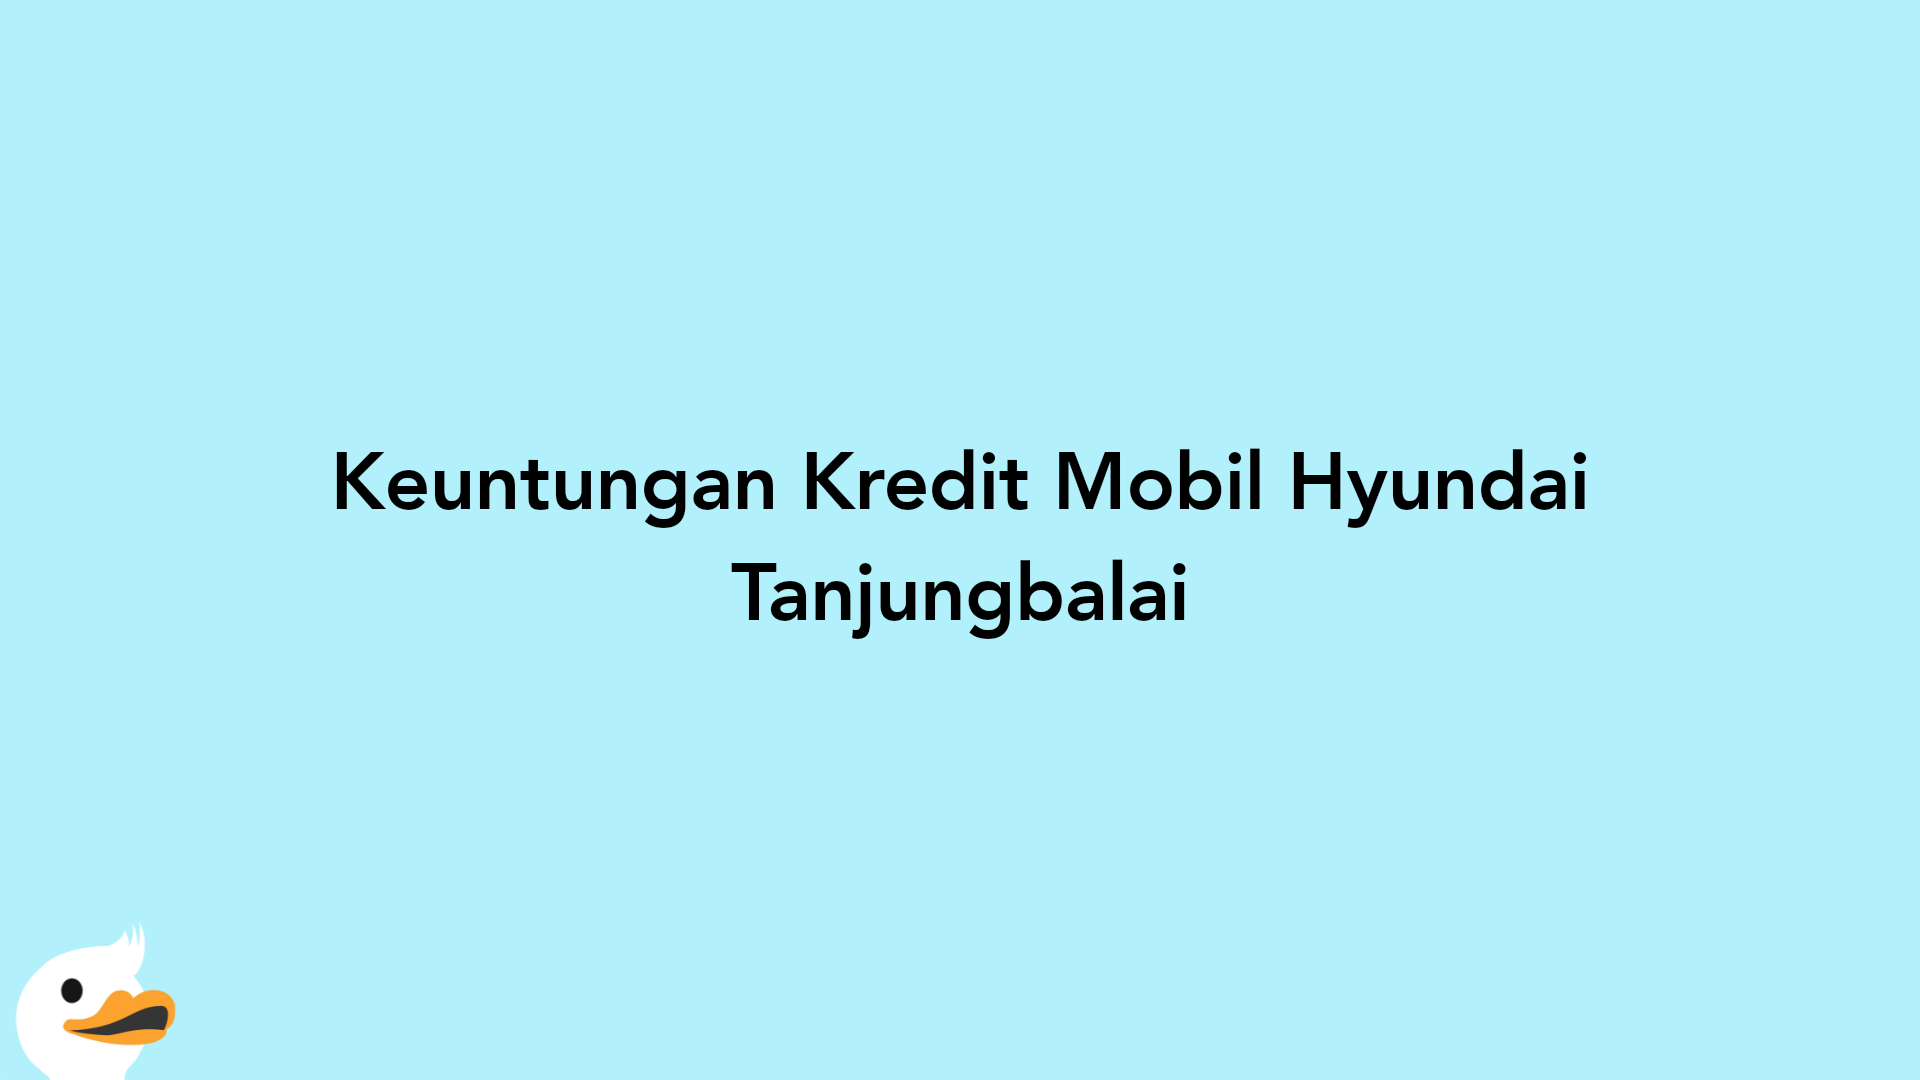 Keuntungan Kredit Mobil Hyundai Tanjungbalai